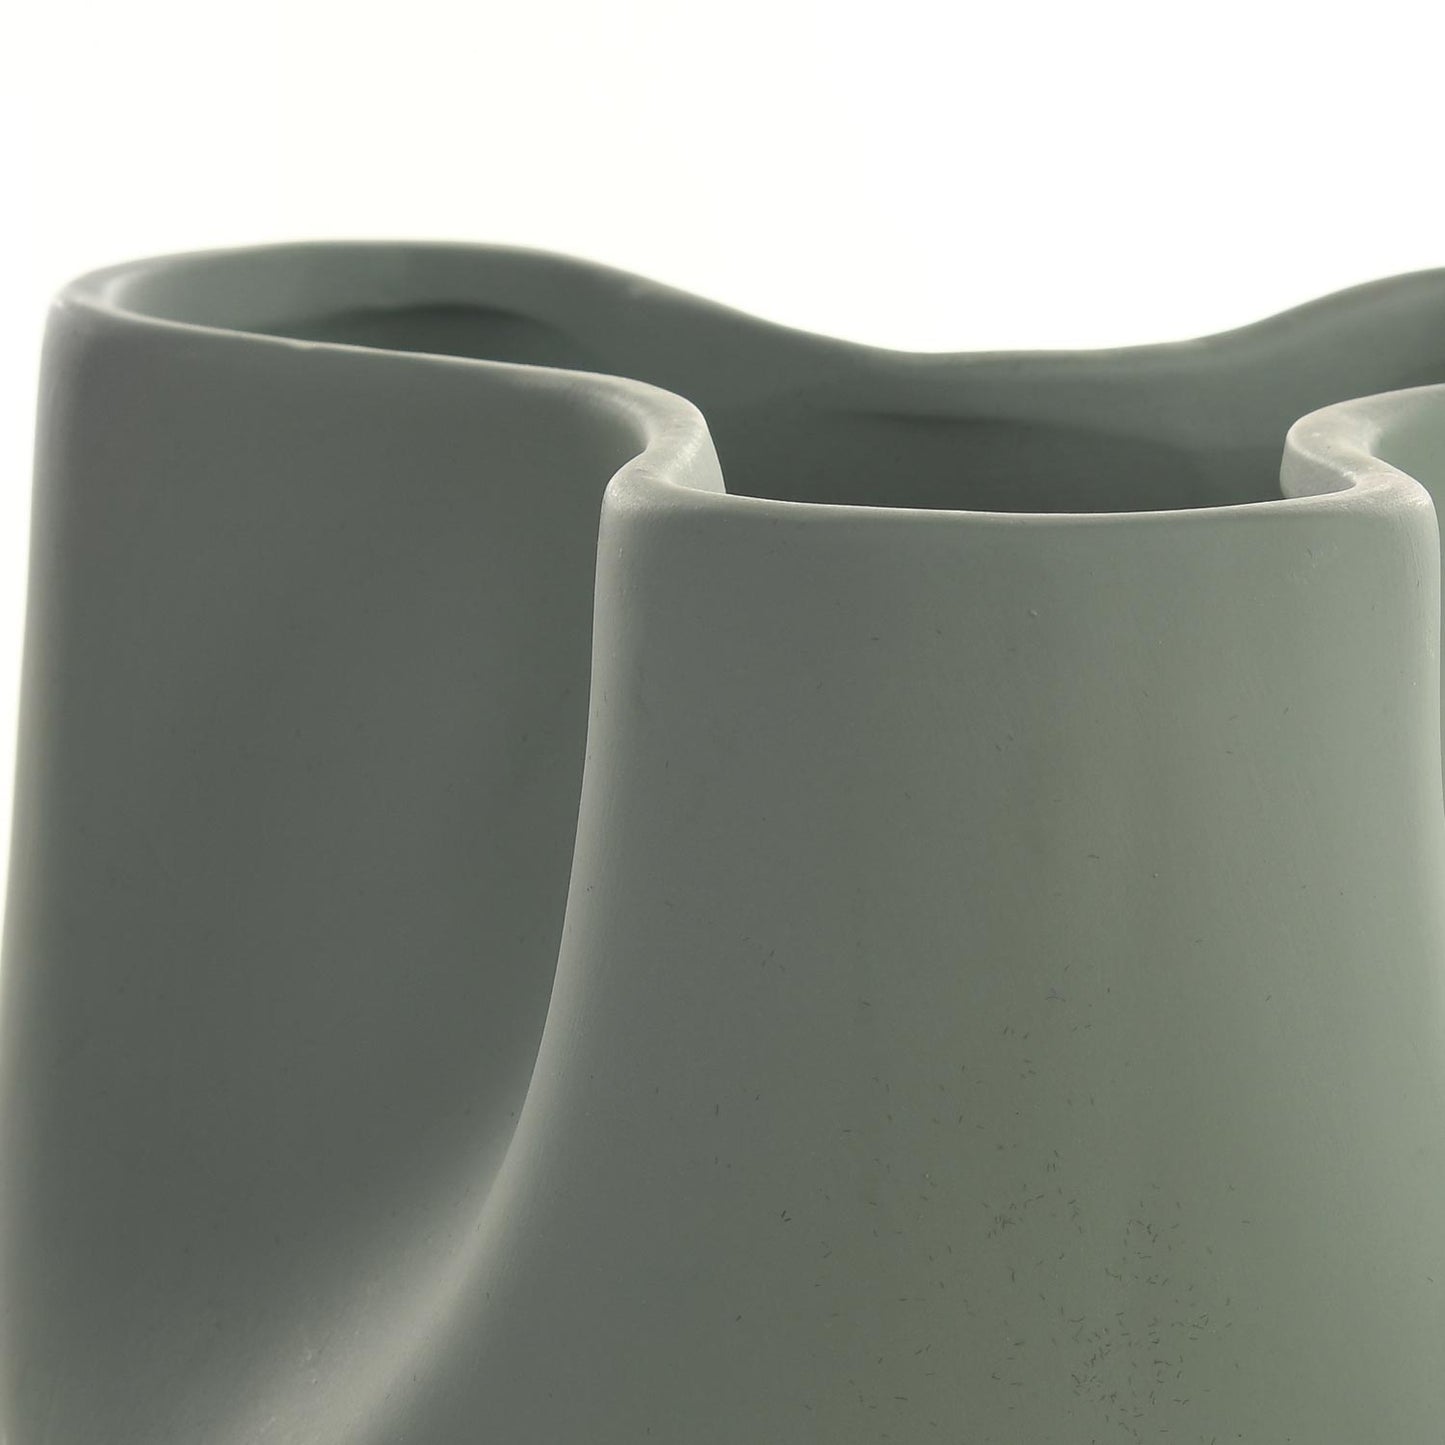 Vaso de Cerâmica Aveiro Menta 19 cm